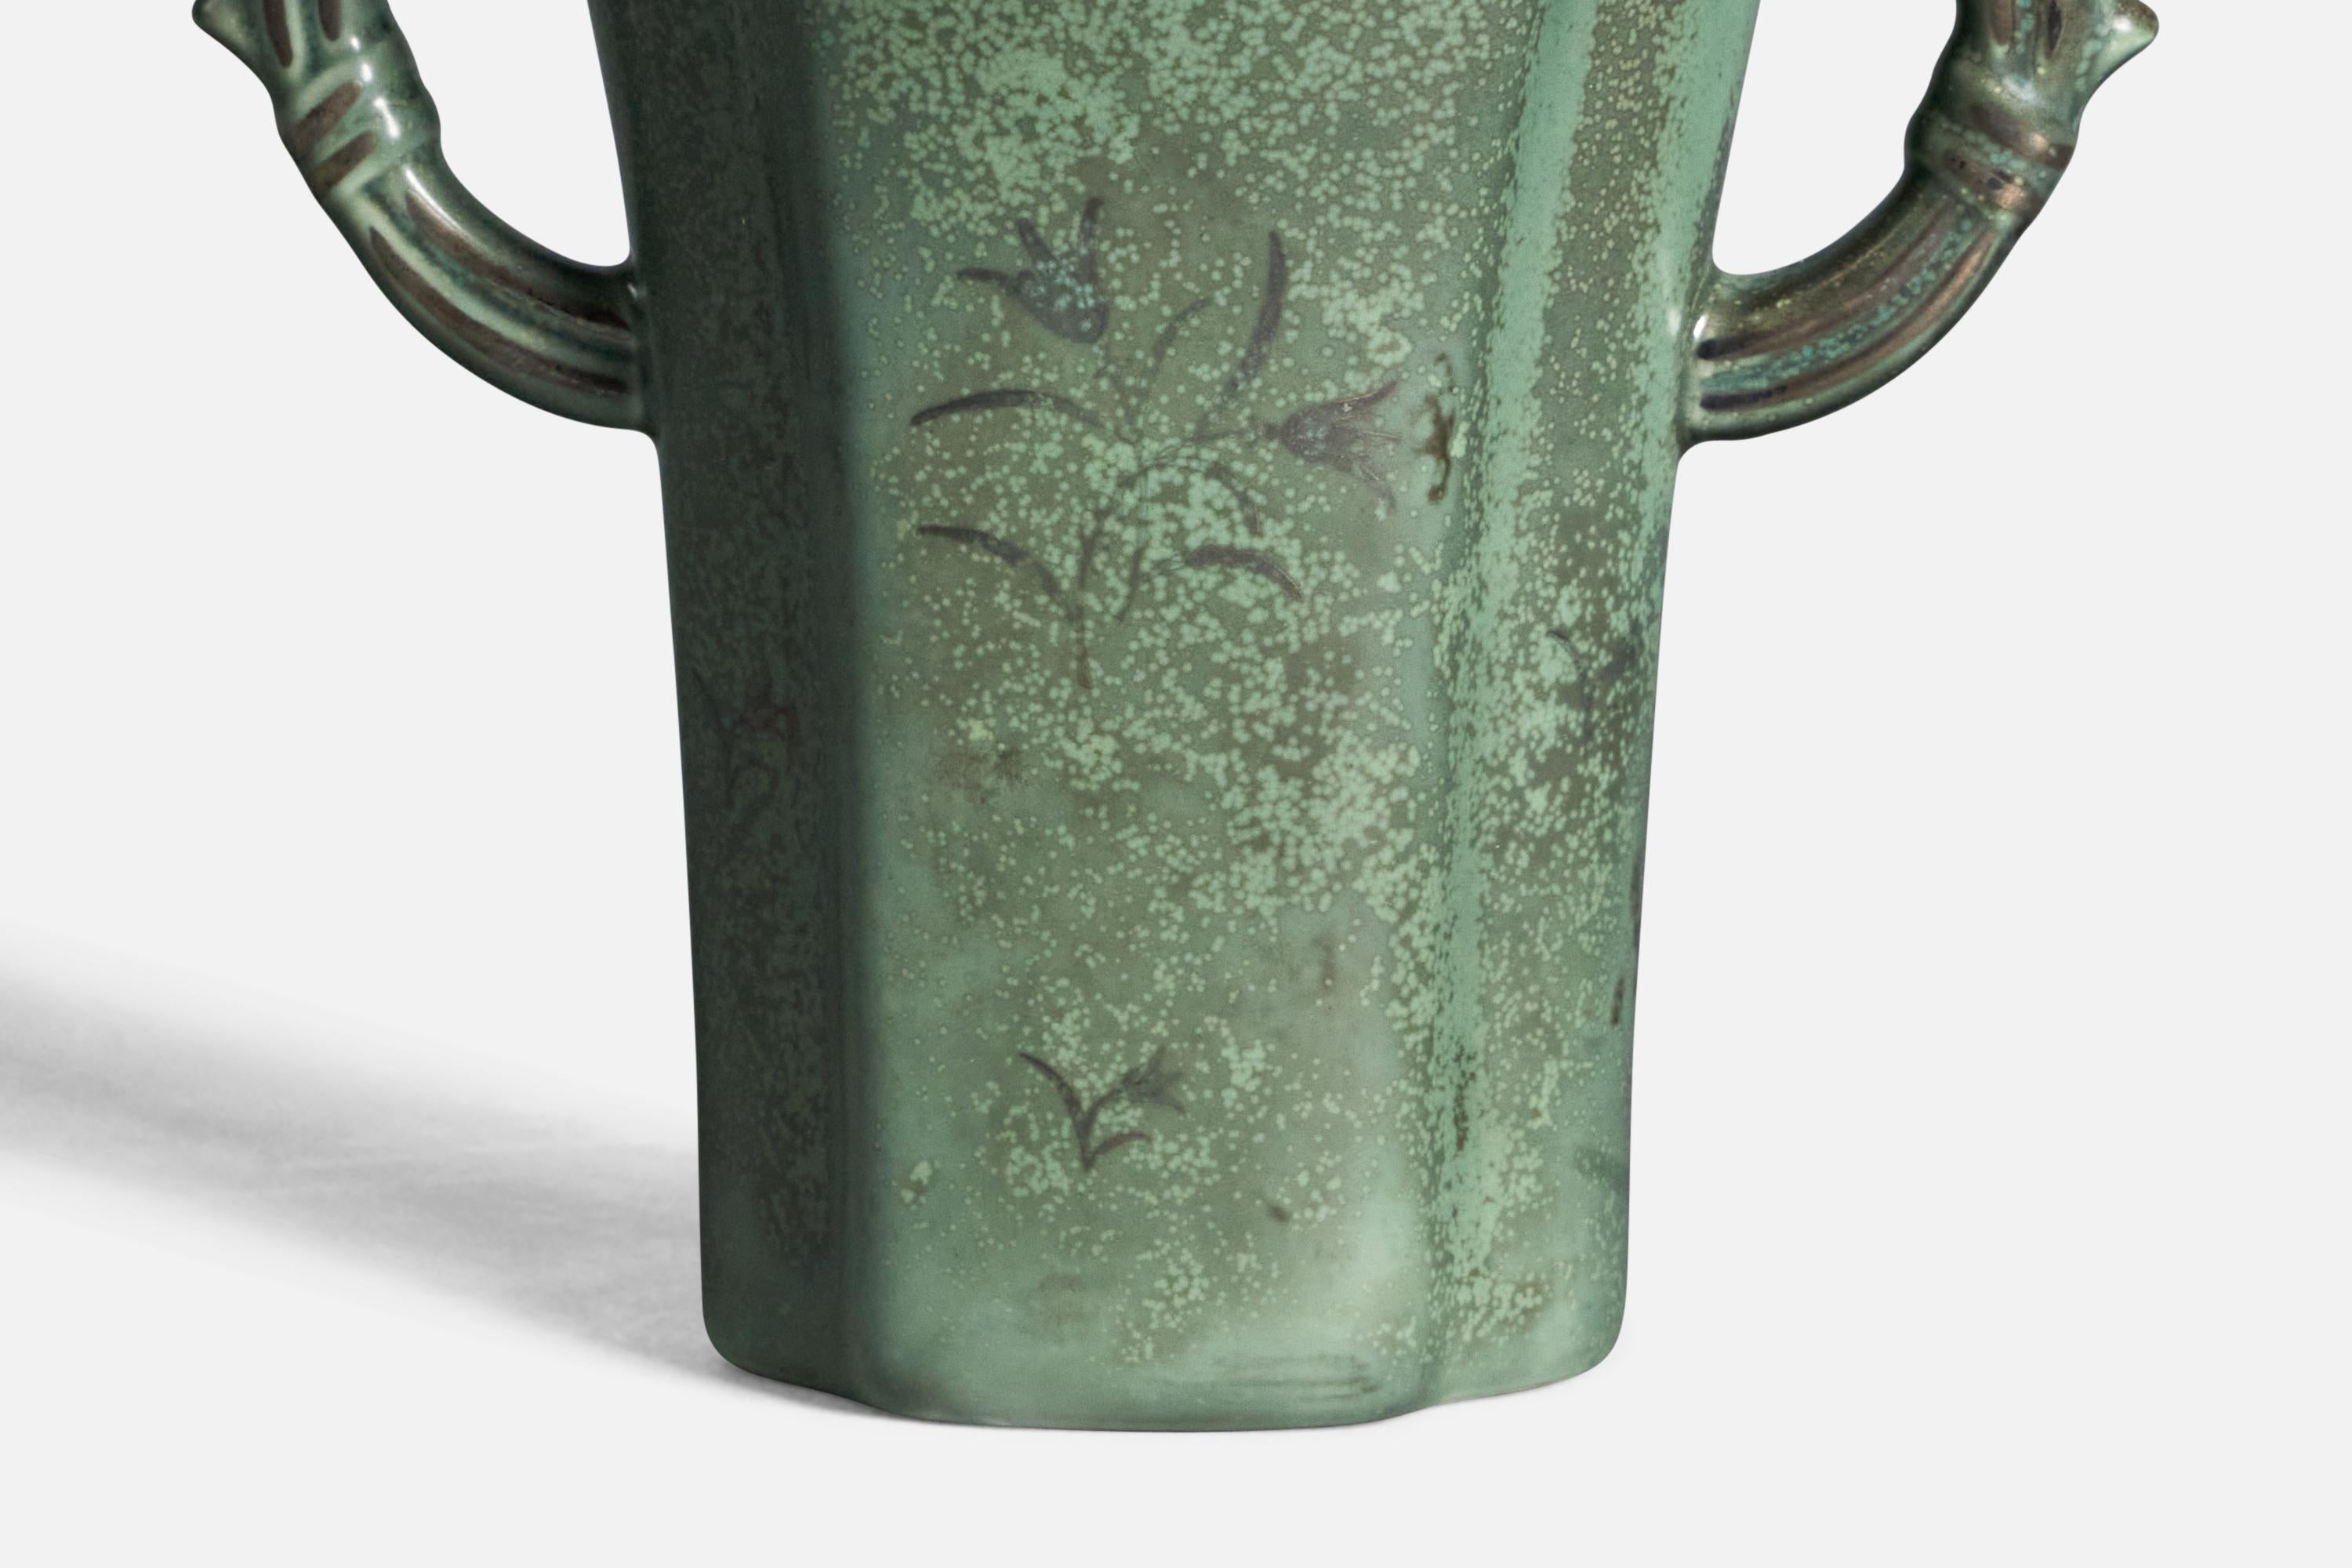 Vase en grès émaillé vert et argenté, conçu et produit par Arabia, Finlande, vers les années 1940.
